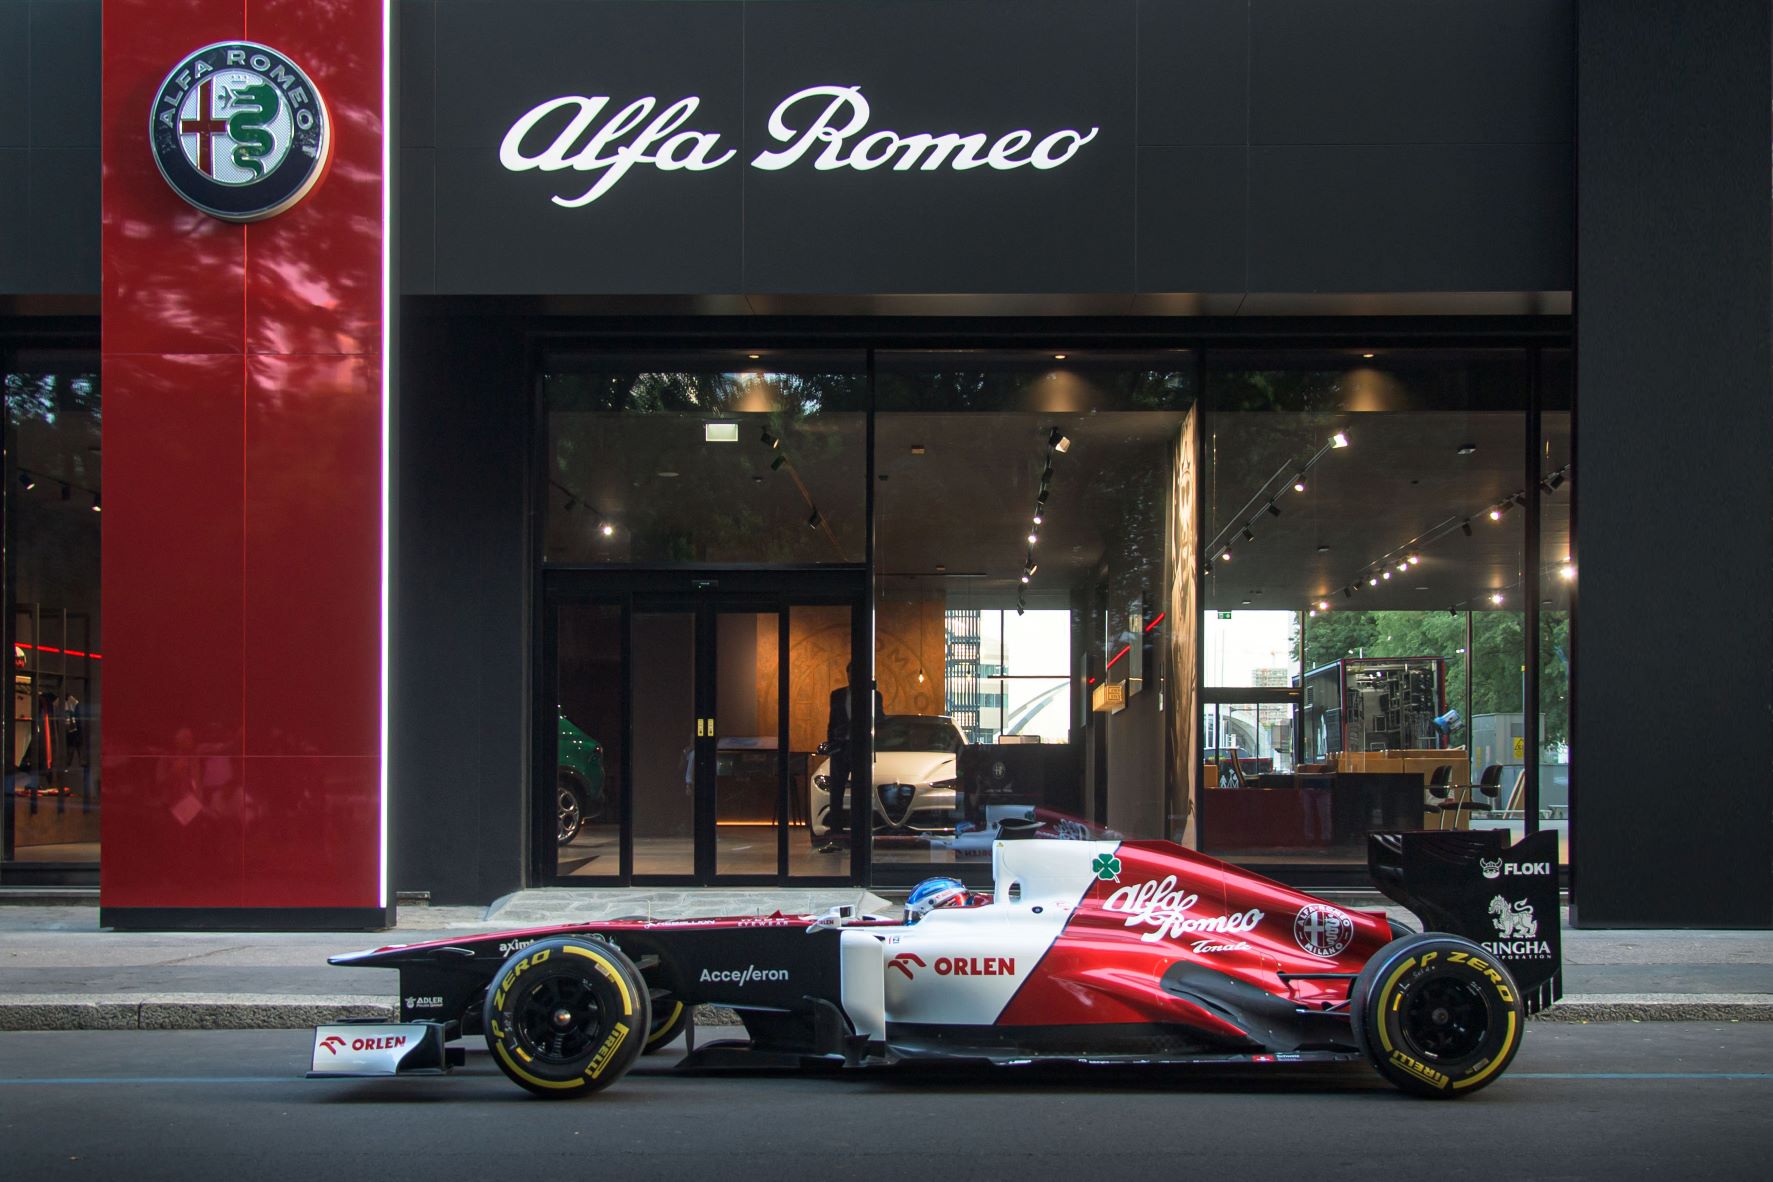 Alfa Romeo F1 team racecar in Milan